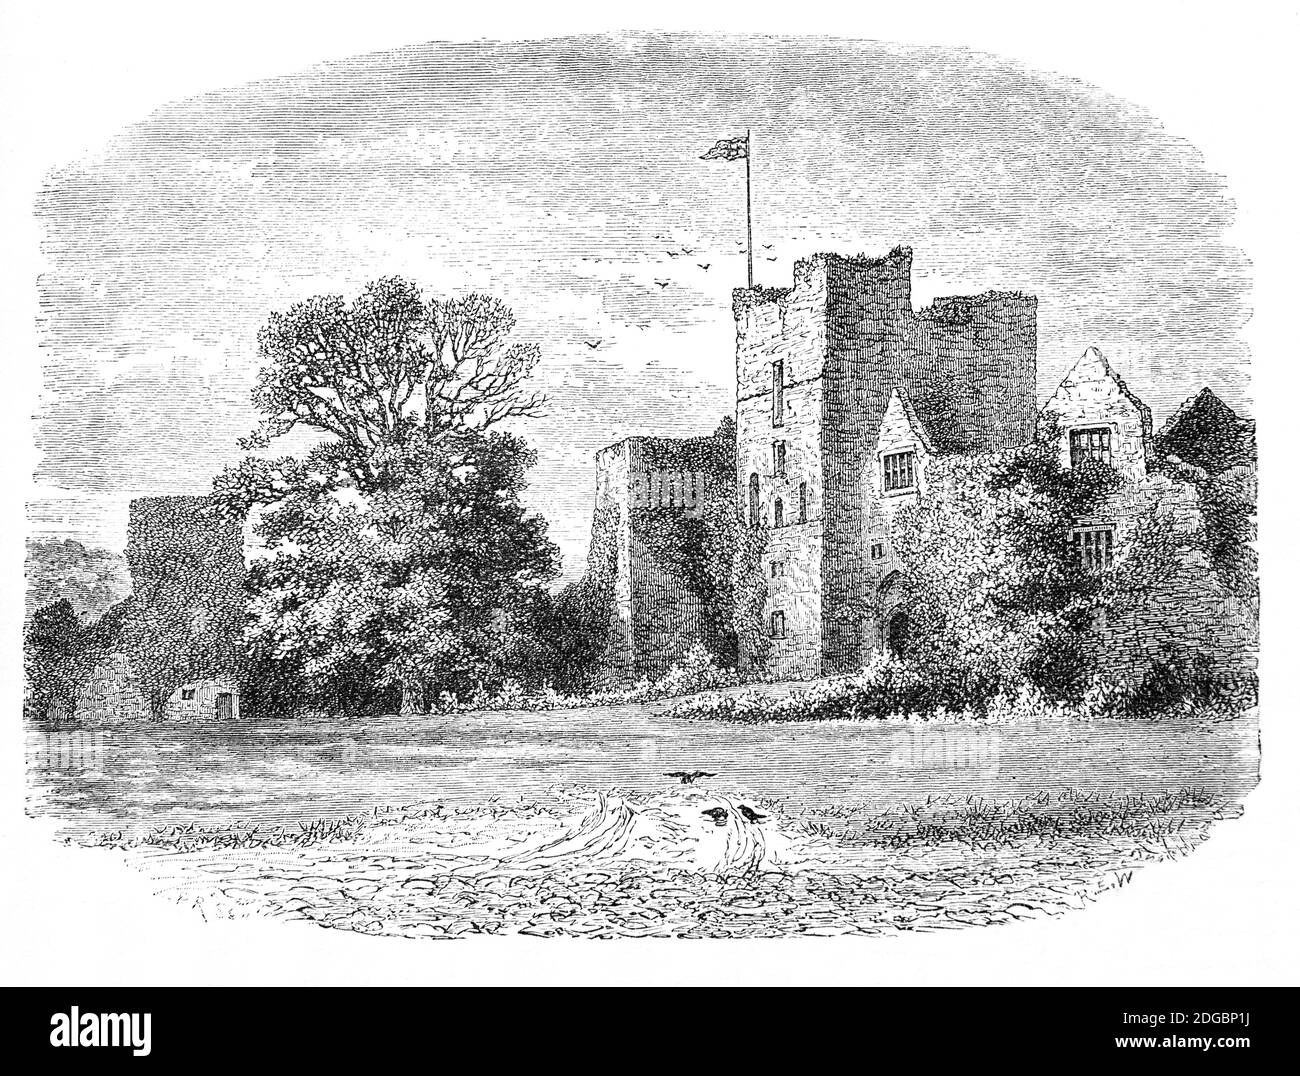 Vue de la fin du XIXe siècle sur le château de Ludlow, château médiéval en ruines à Ludlow, Shropshire et l'un des premiers châteaux en pierre à être construit en Angleterre. Il a probablement été fondé au XIe siècle par Walter de Lacy après la conquête normande. Pendant la guerre civile anglaise, elle fut assiégée, prise par une armée parlementaire en 1646 où une garnison fut retenue pour une grande partie de l'interrègne. Après la restauration de 1660, il est tombé dans la négligence jusqu'à ce qu'un manoir ait été construit dans le Bailey extérieur. En dehors d'un certain aménagement paysager, le reste du château a été laissé largement intact. Banque D'Images